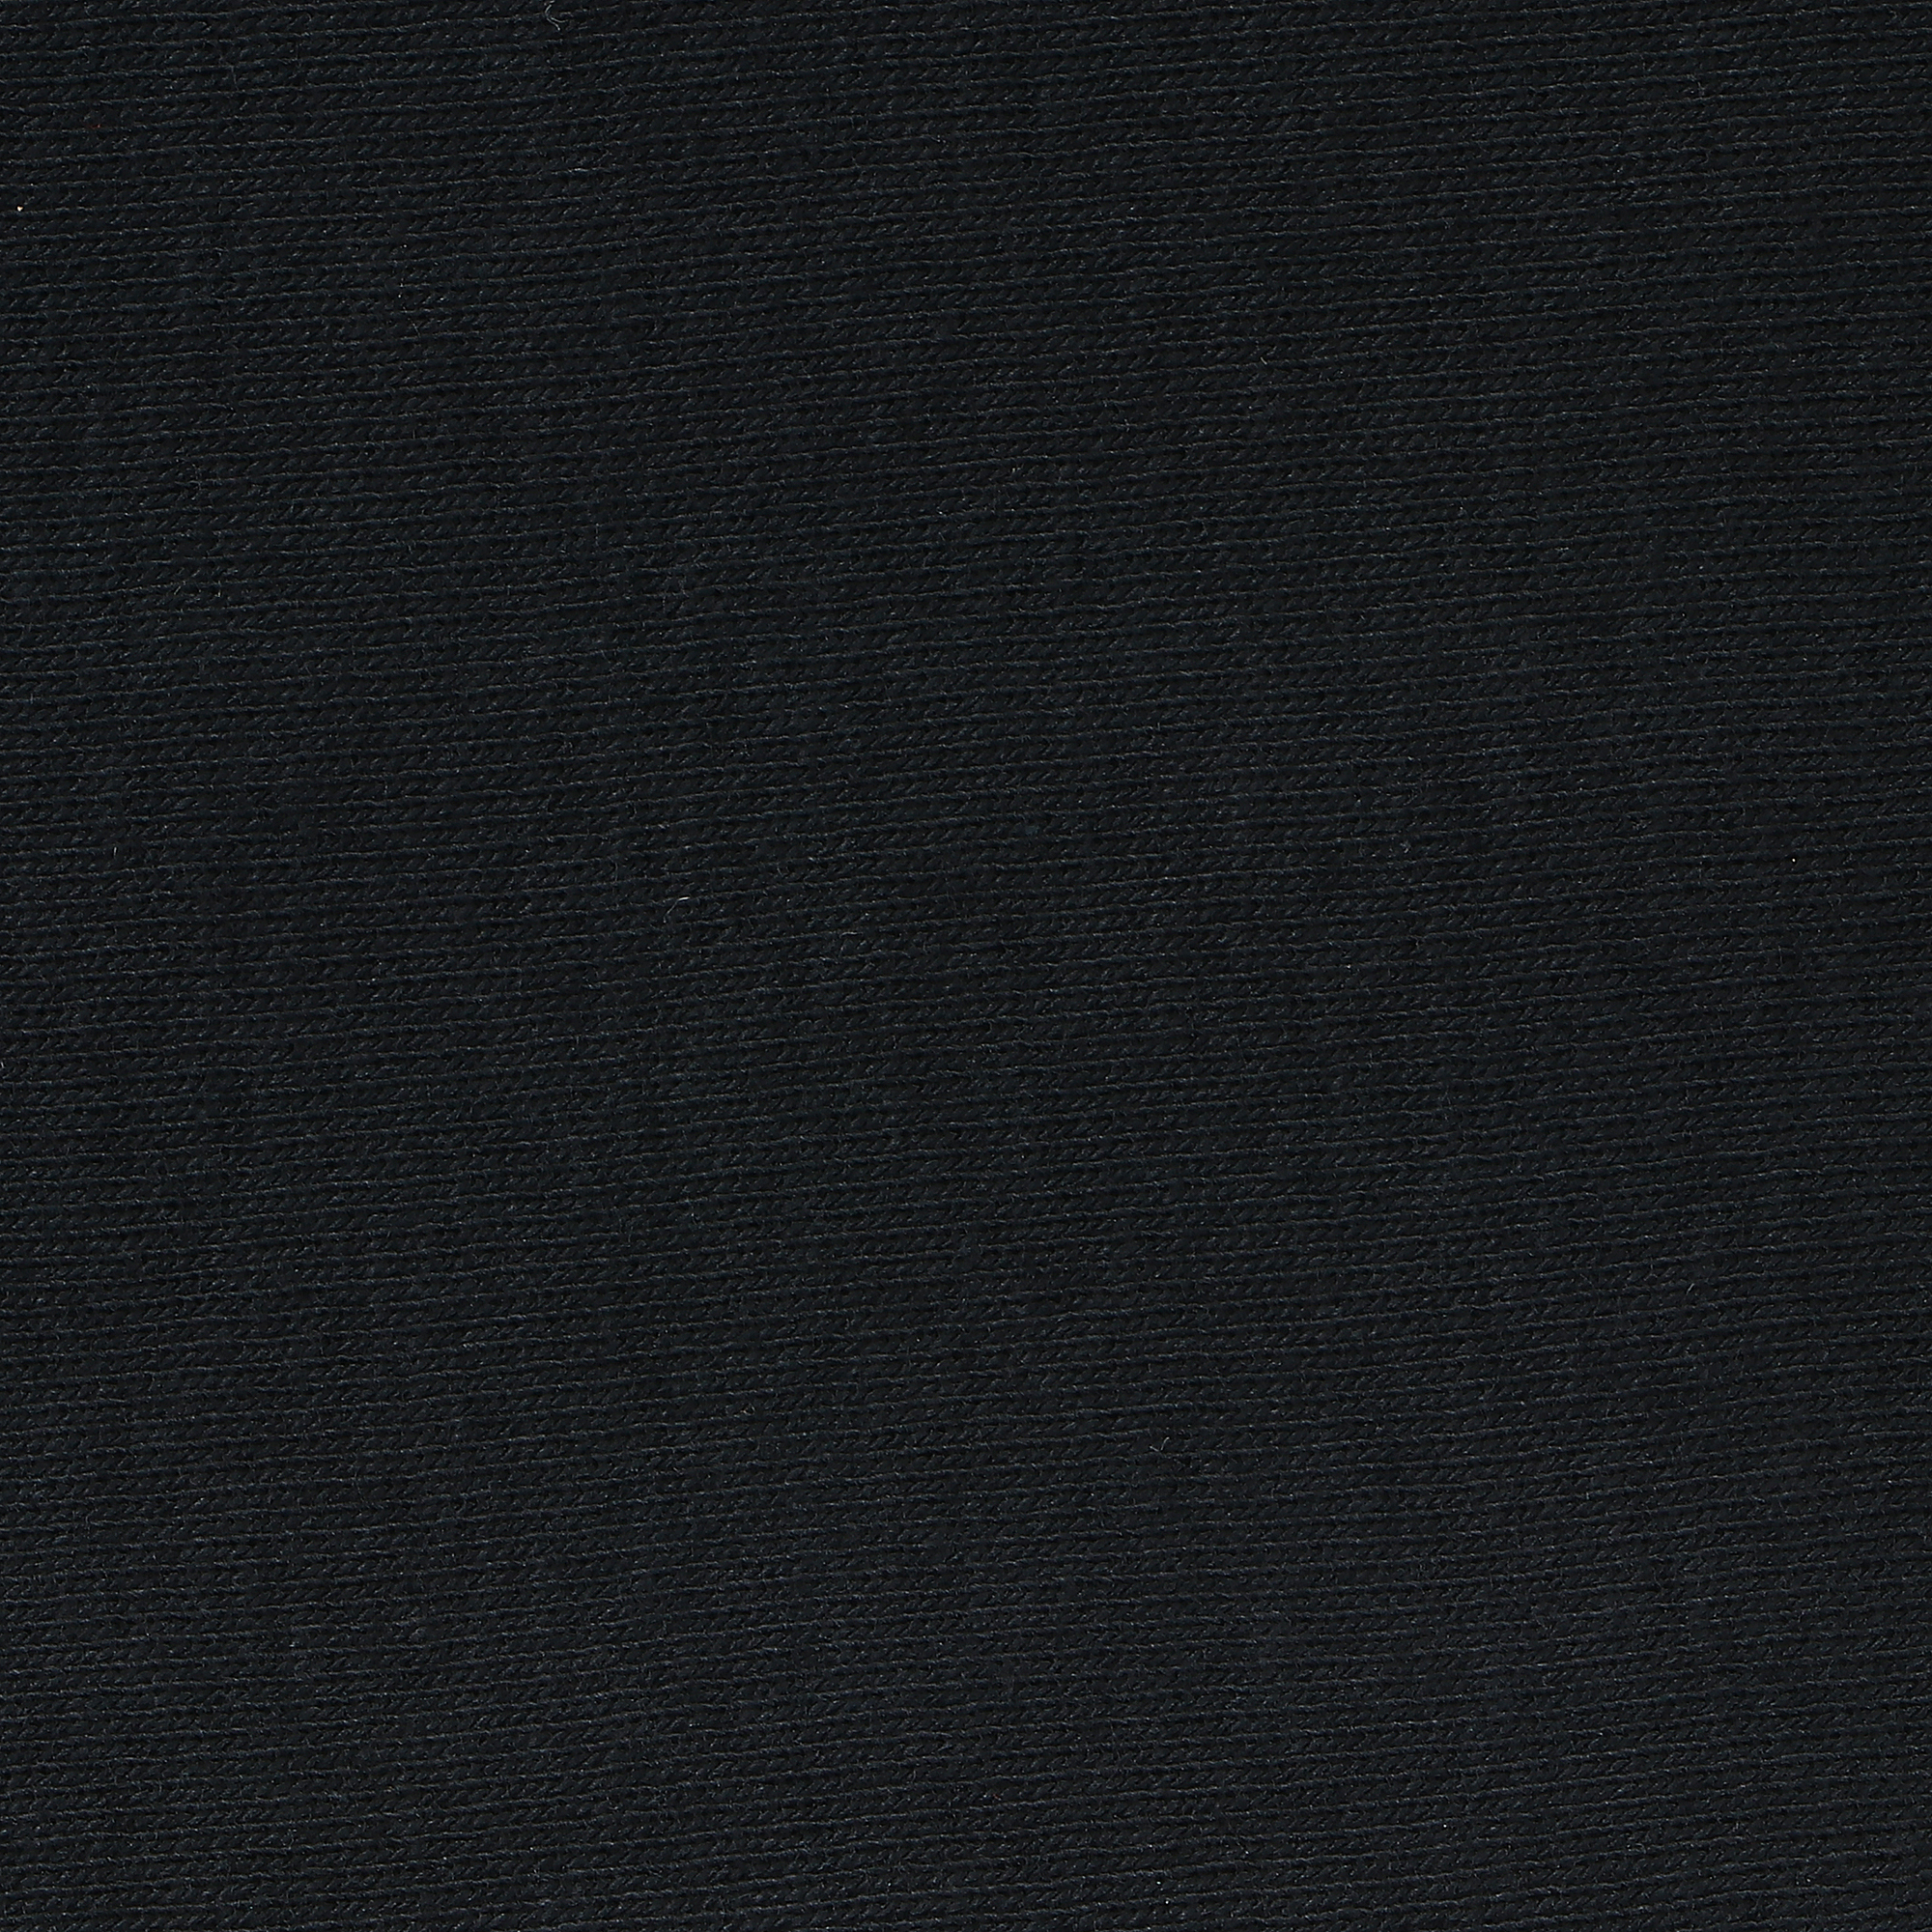 Футболка мужская Xiamen Honesty черная XXXL, цвет черный, размер XXXL - фото 3